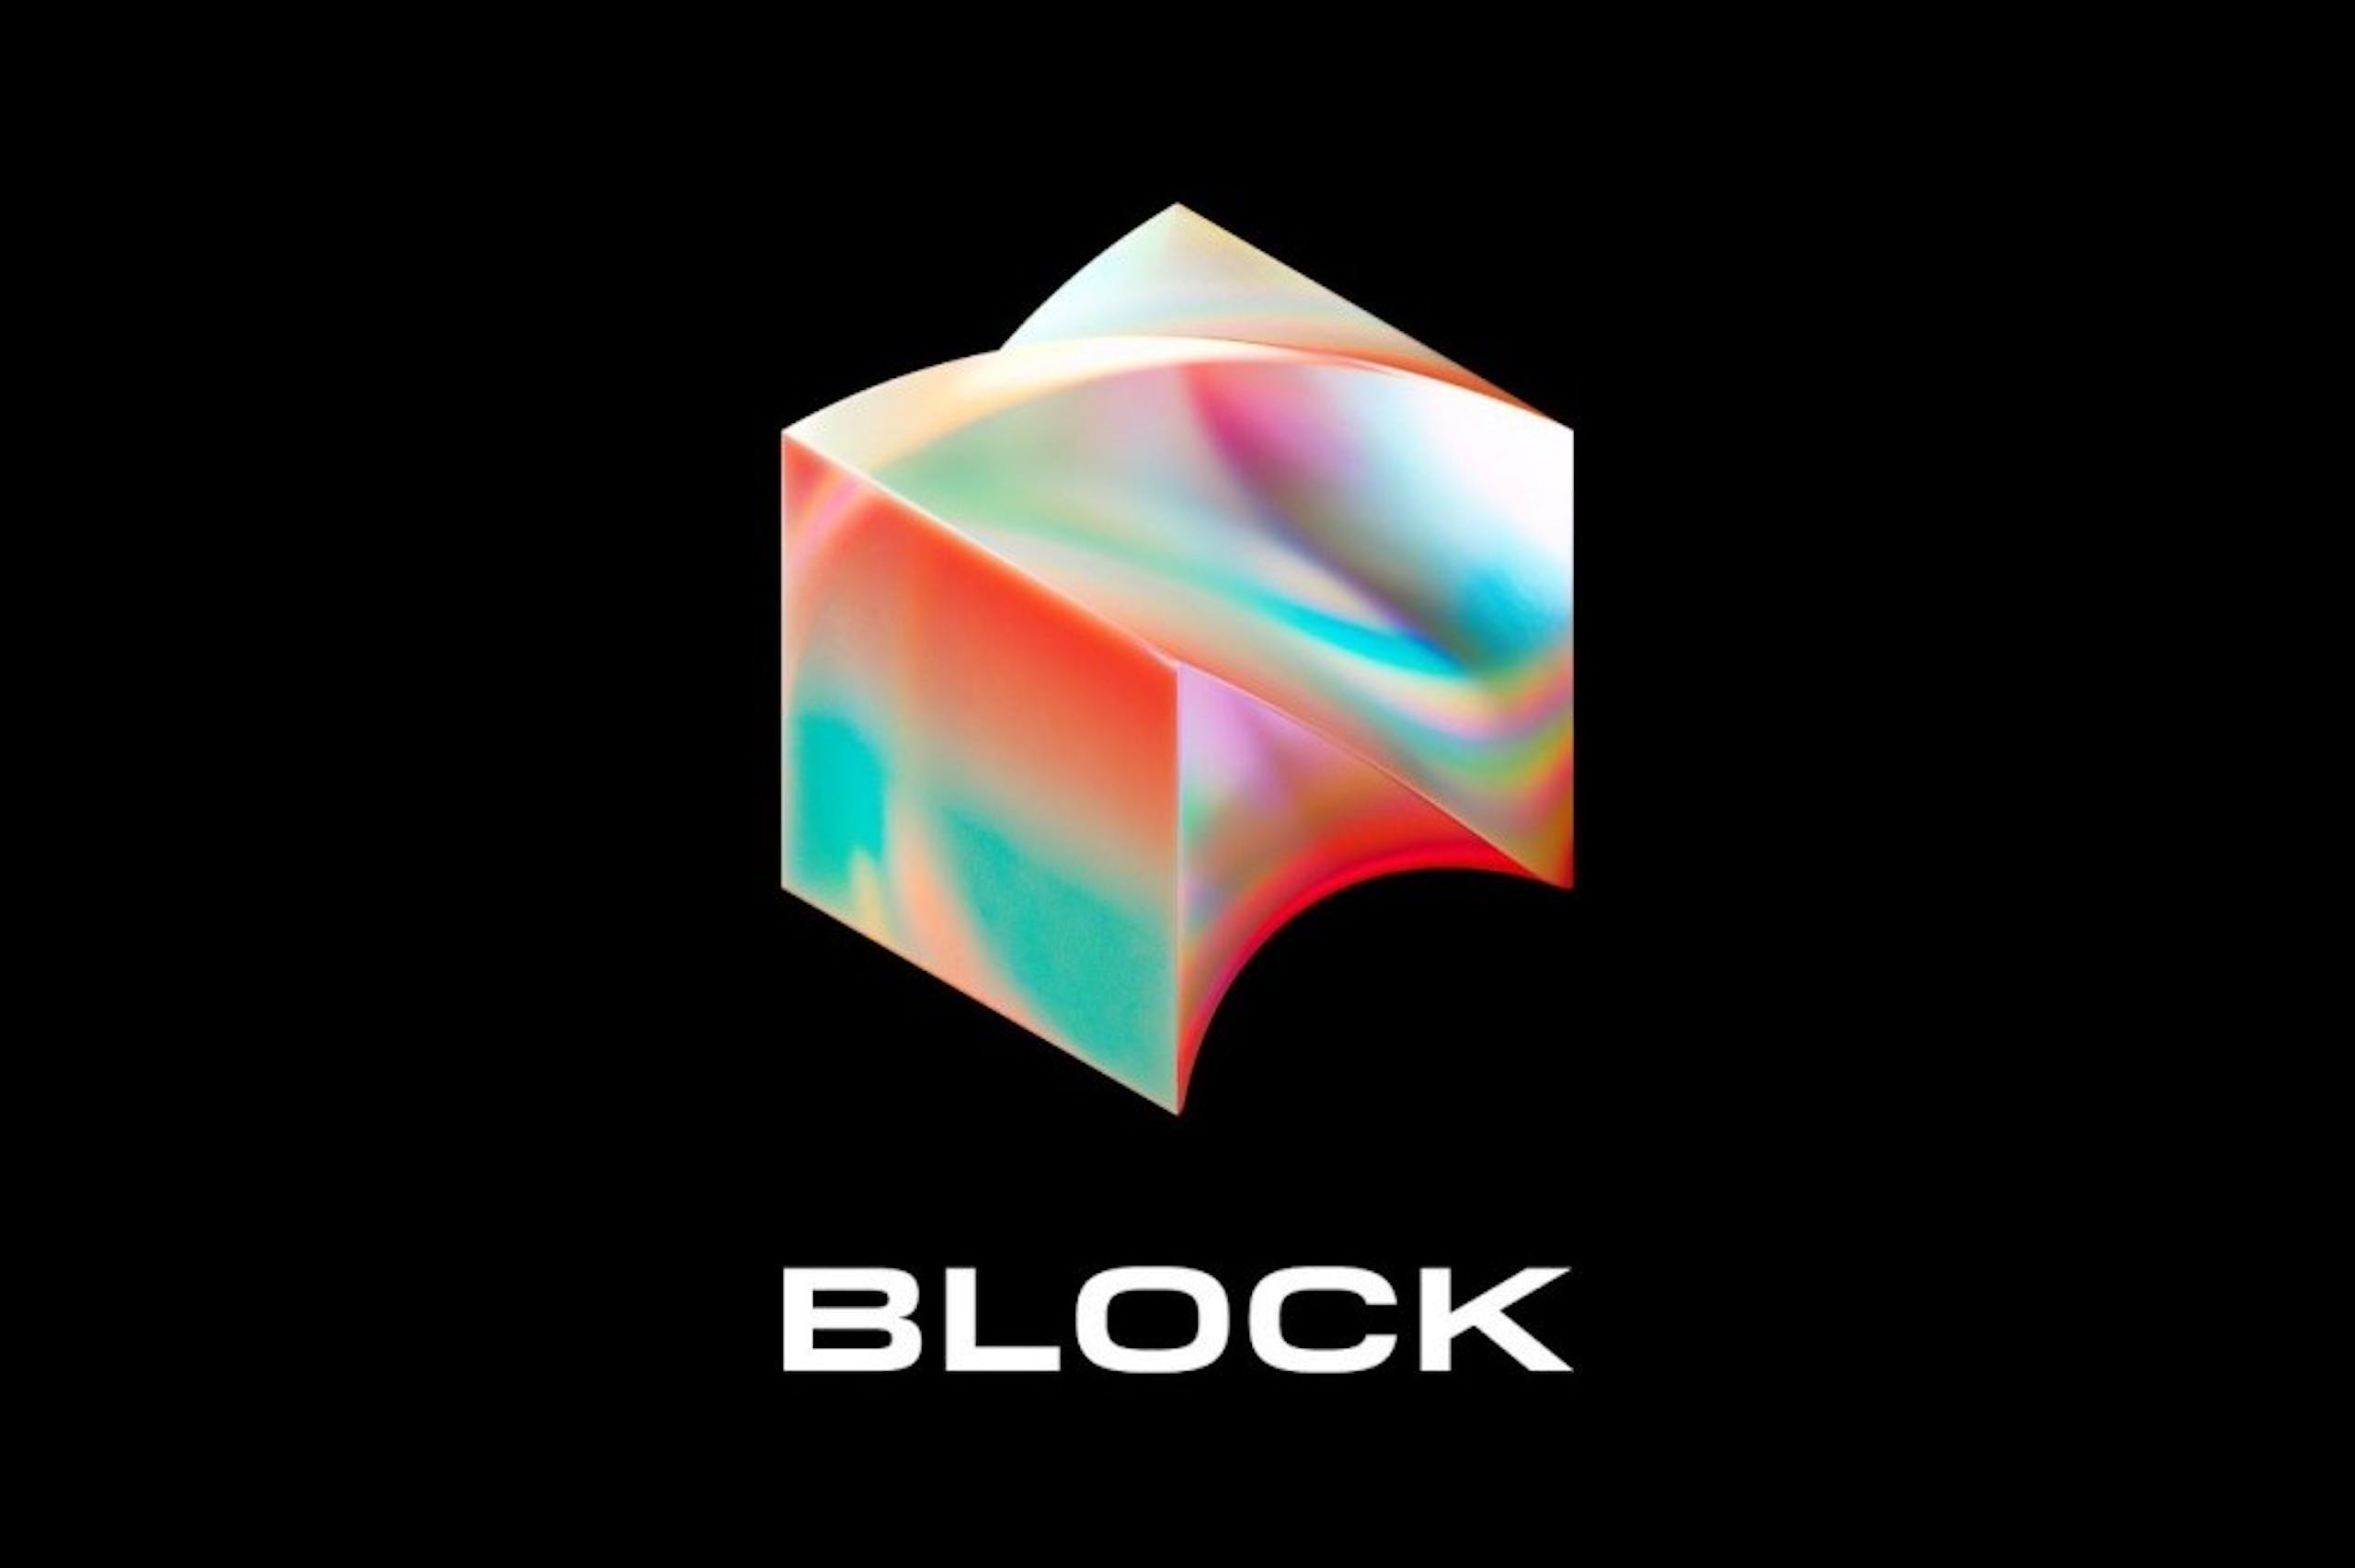 行動支付平台 Square 公司改名 Block 加密貨幣業務也改名 Spiral